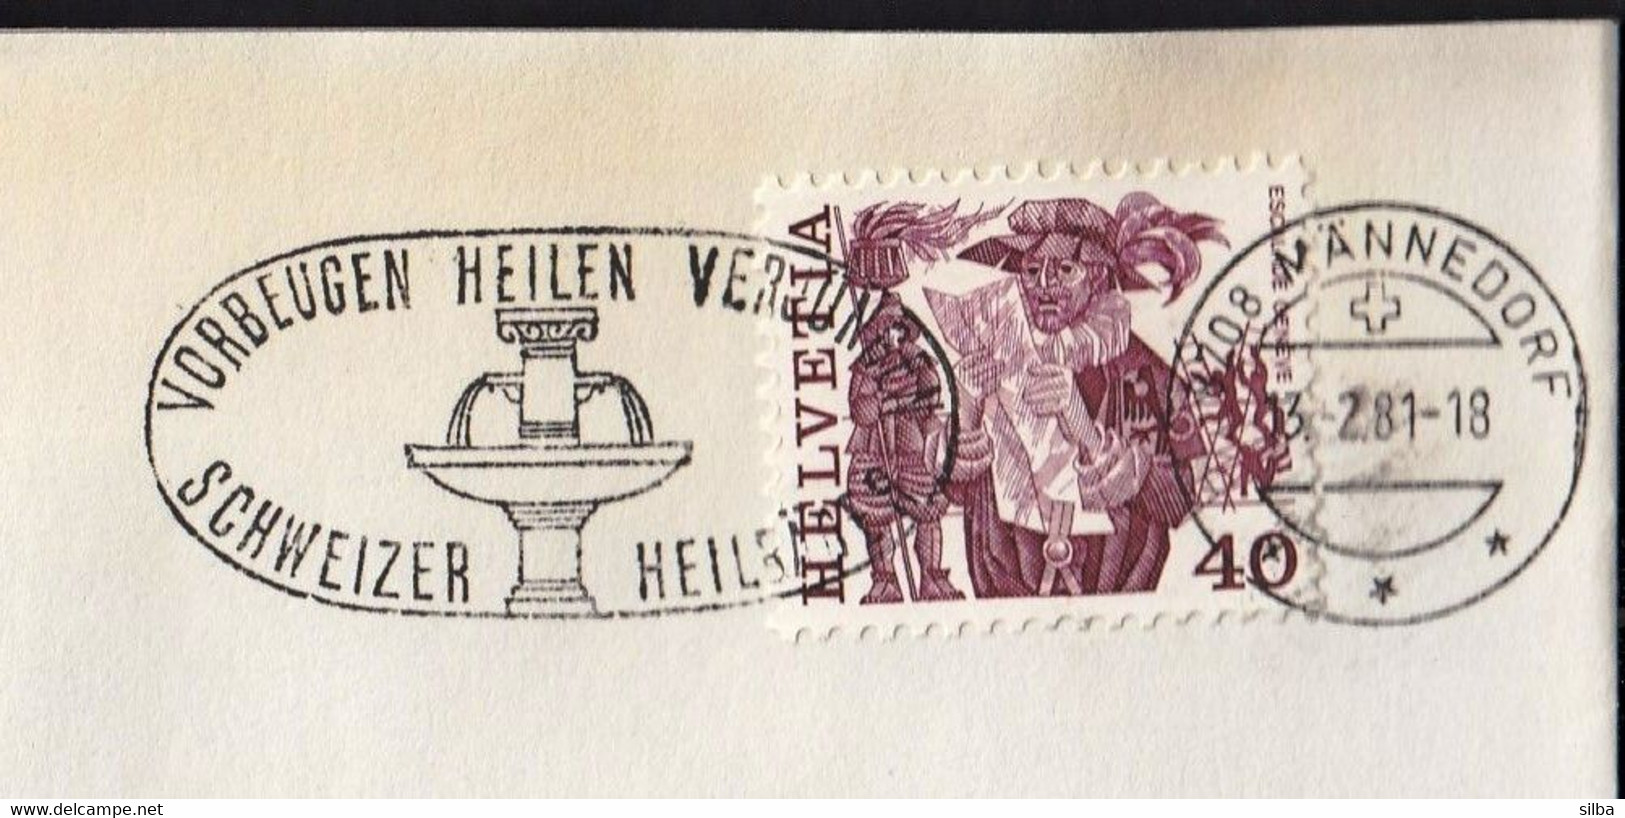 Switzerland Mannedorf 1981 / Vorbeugen Heilen Verjungen Schweizer Heilbäder / Spa / Health Resort / Machine Stamp - Bäderwesen